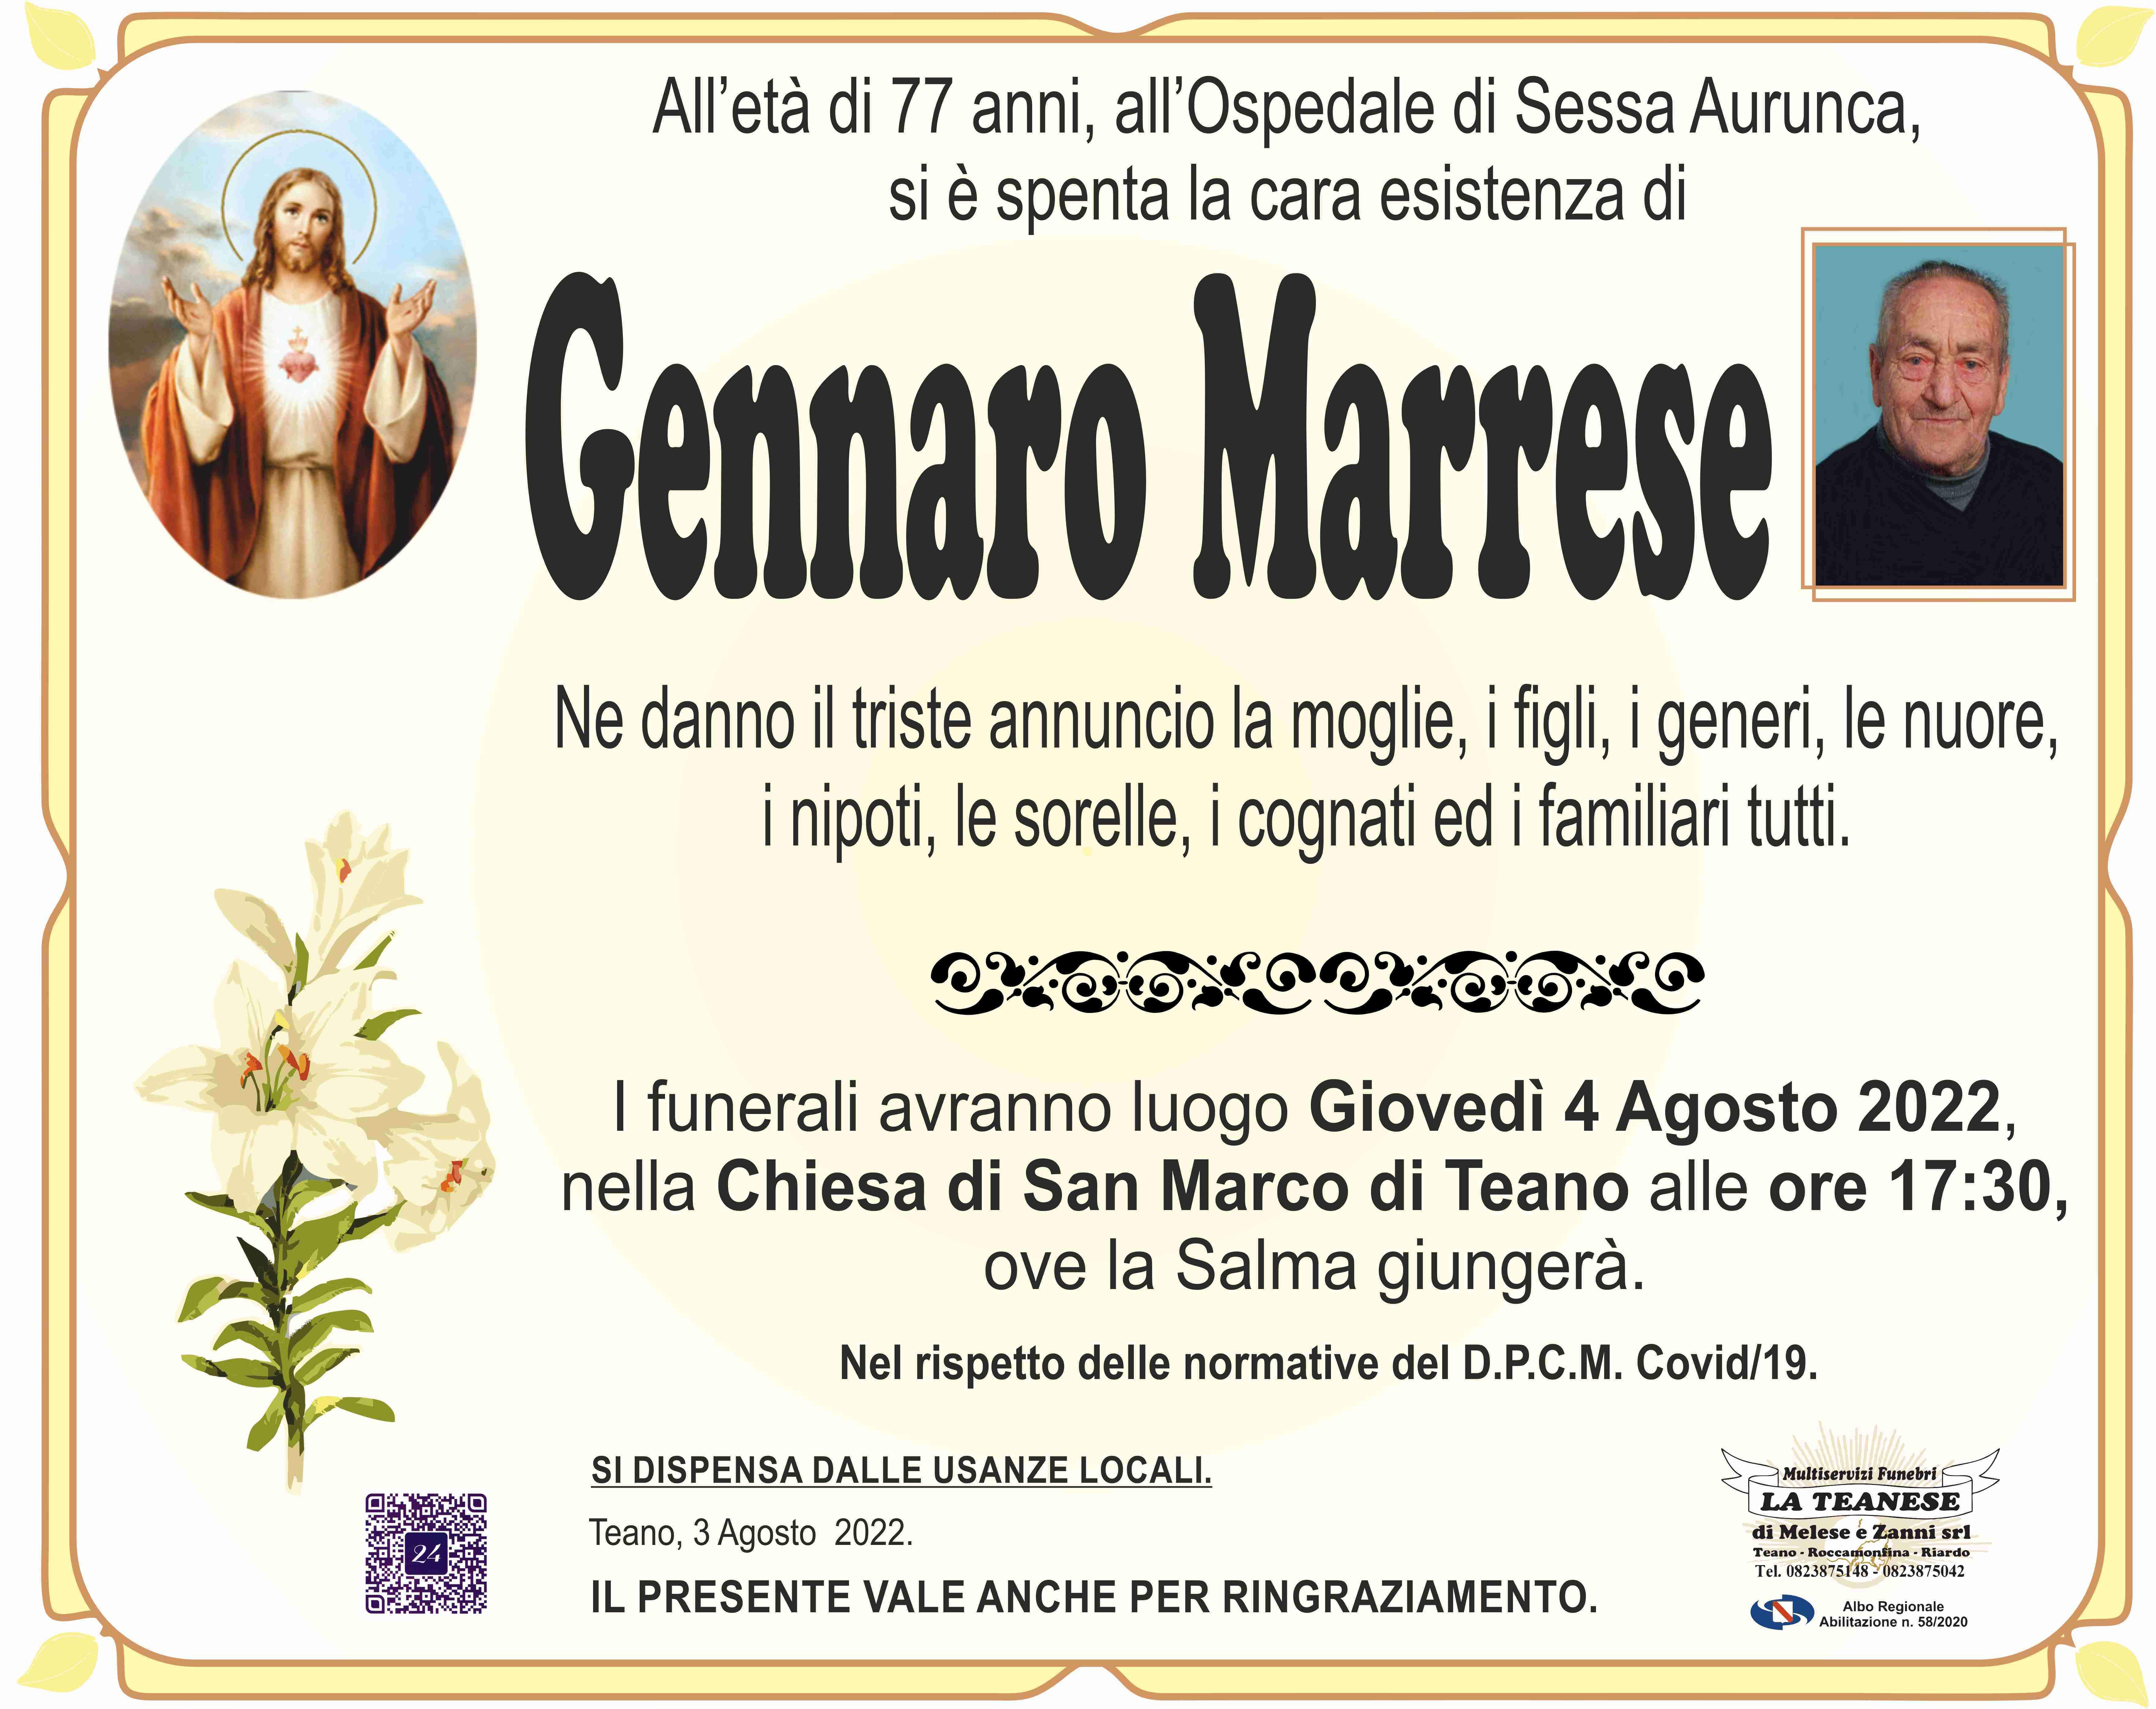 Gennaro Marrese